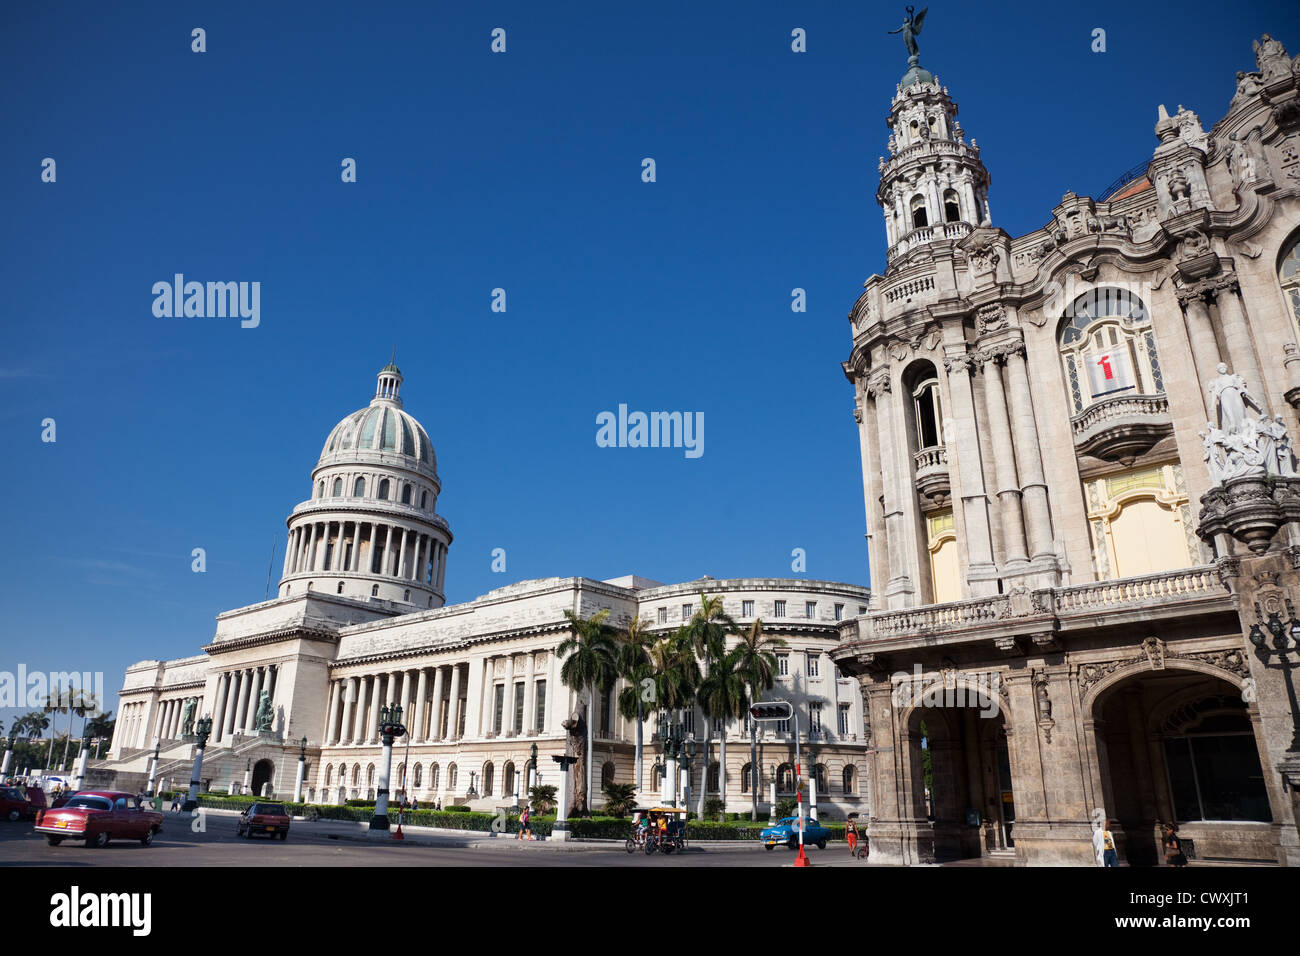 Die atemberaubende El Capitolio in Havanna Gebäude ist eine beeindruckende Sehenswürdigkeit. Stockfoto